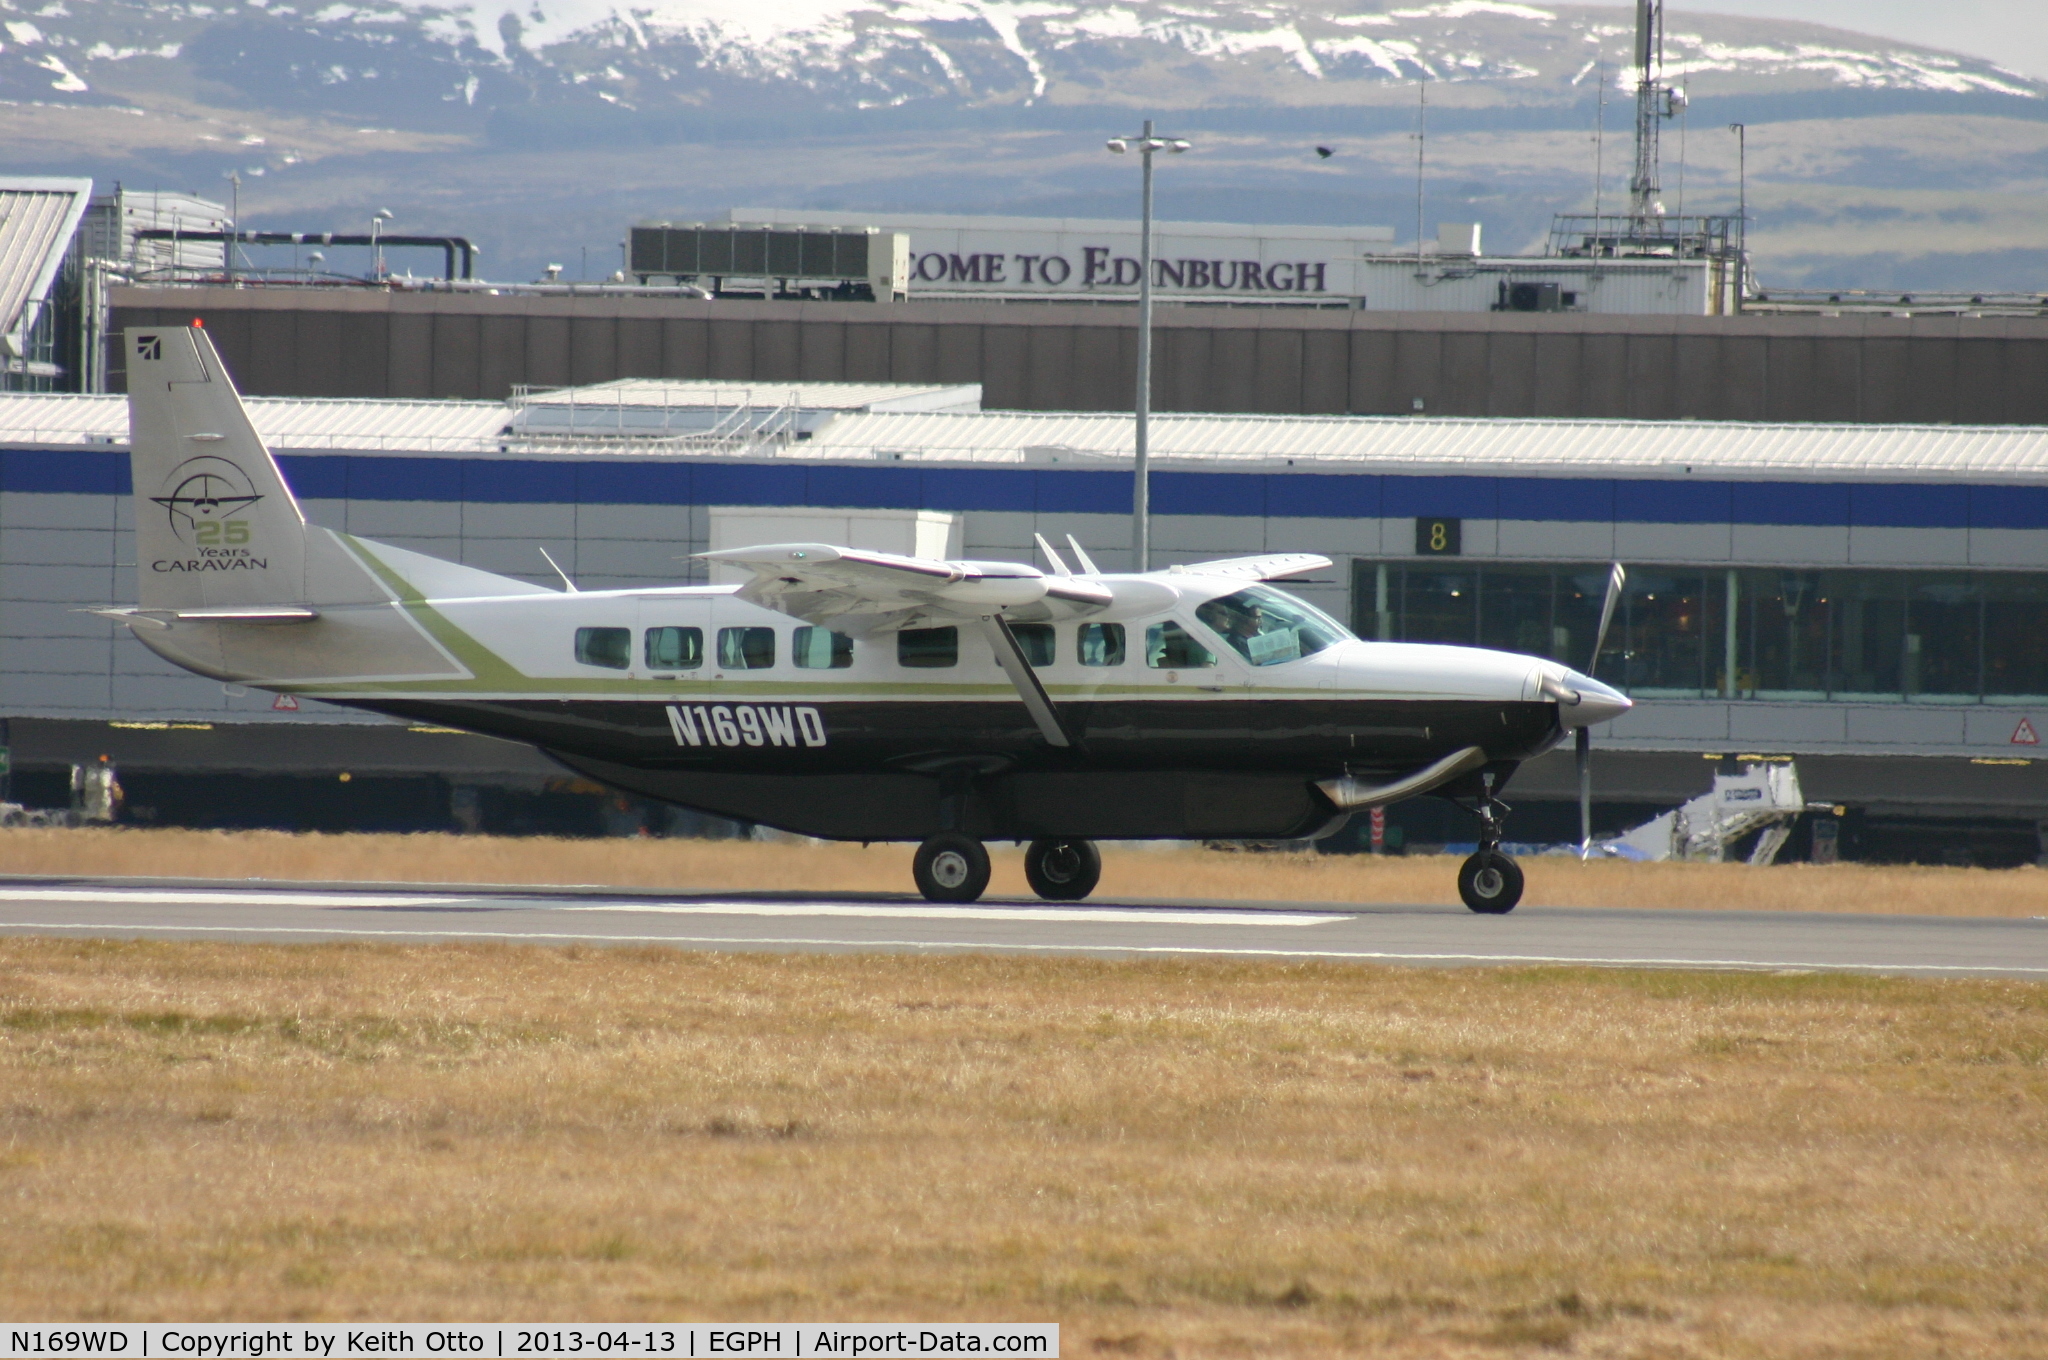 N169WD, Cessna 208B C/N 208B2167, Caravan arrives on runway 240 at Edinburgh airport